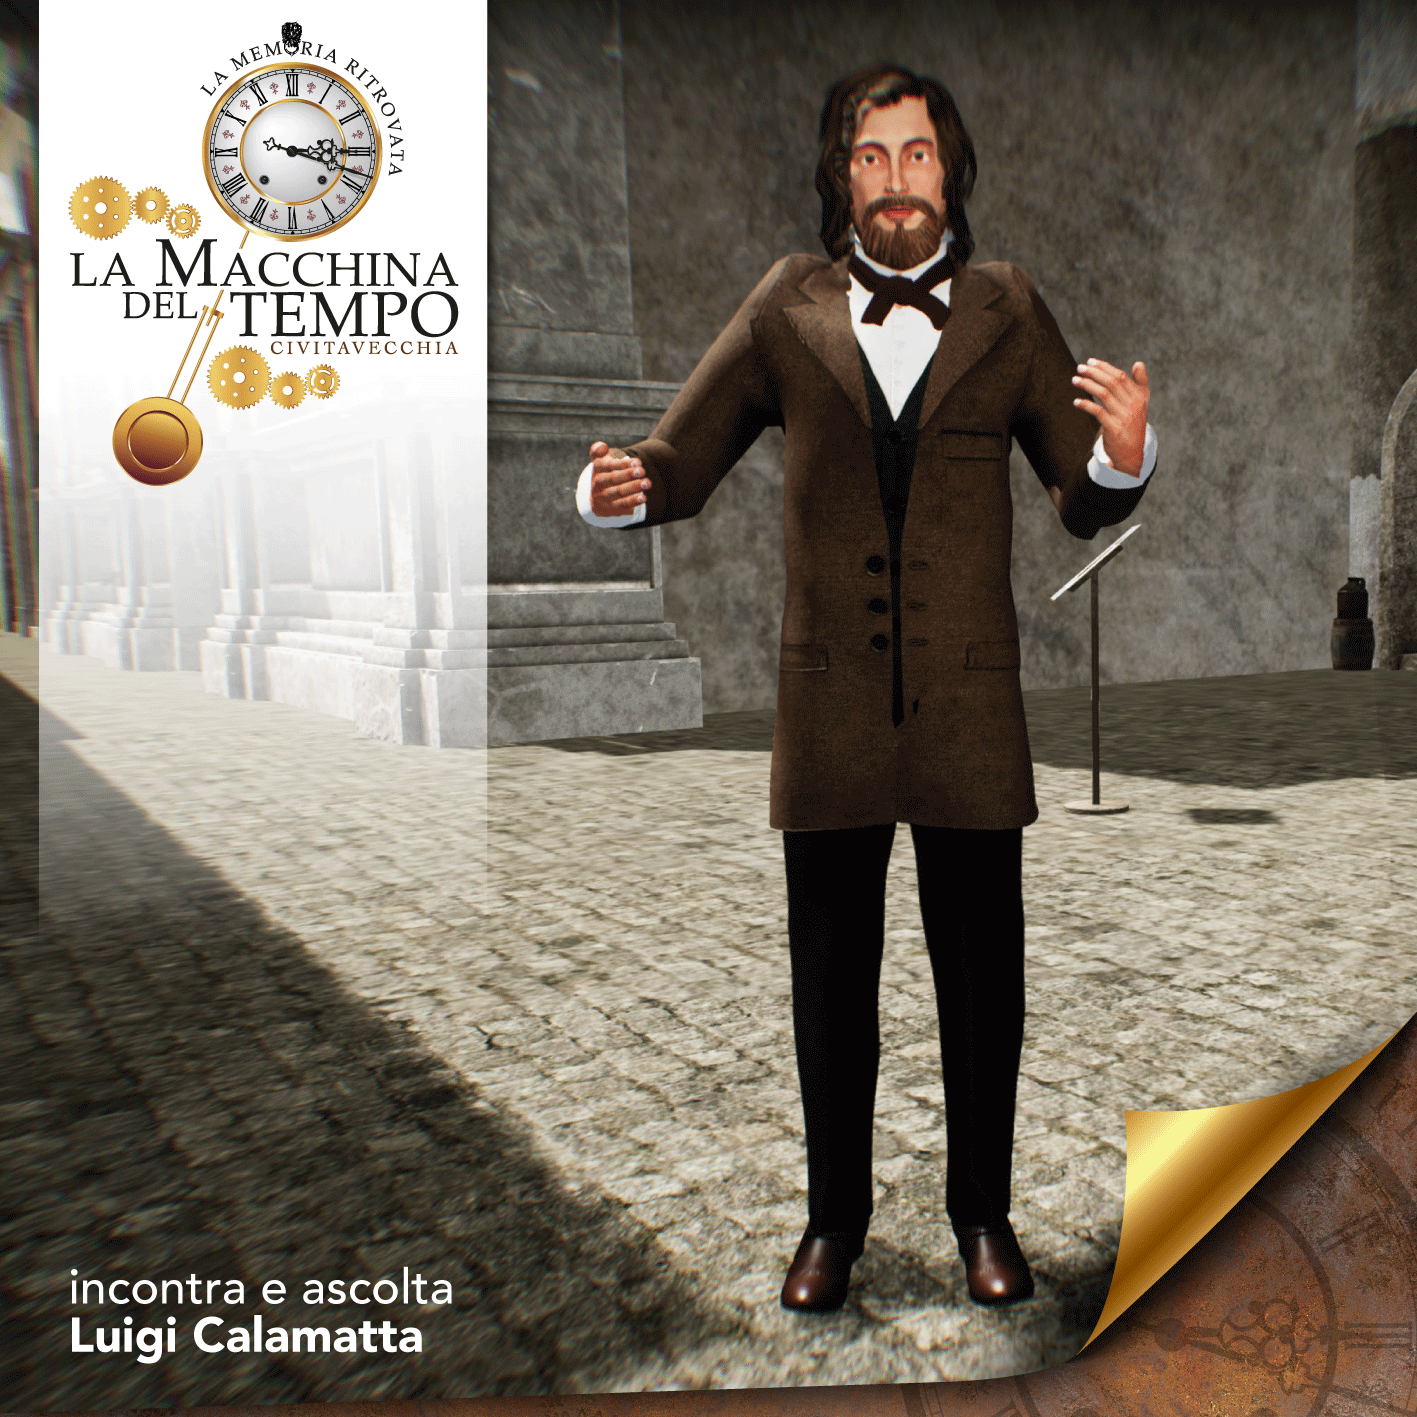 Luigi Calamatta è uno dei personaggi che incontrerete durante la visita virtuale!